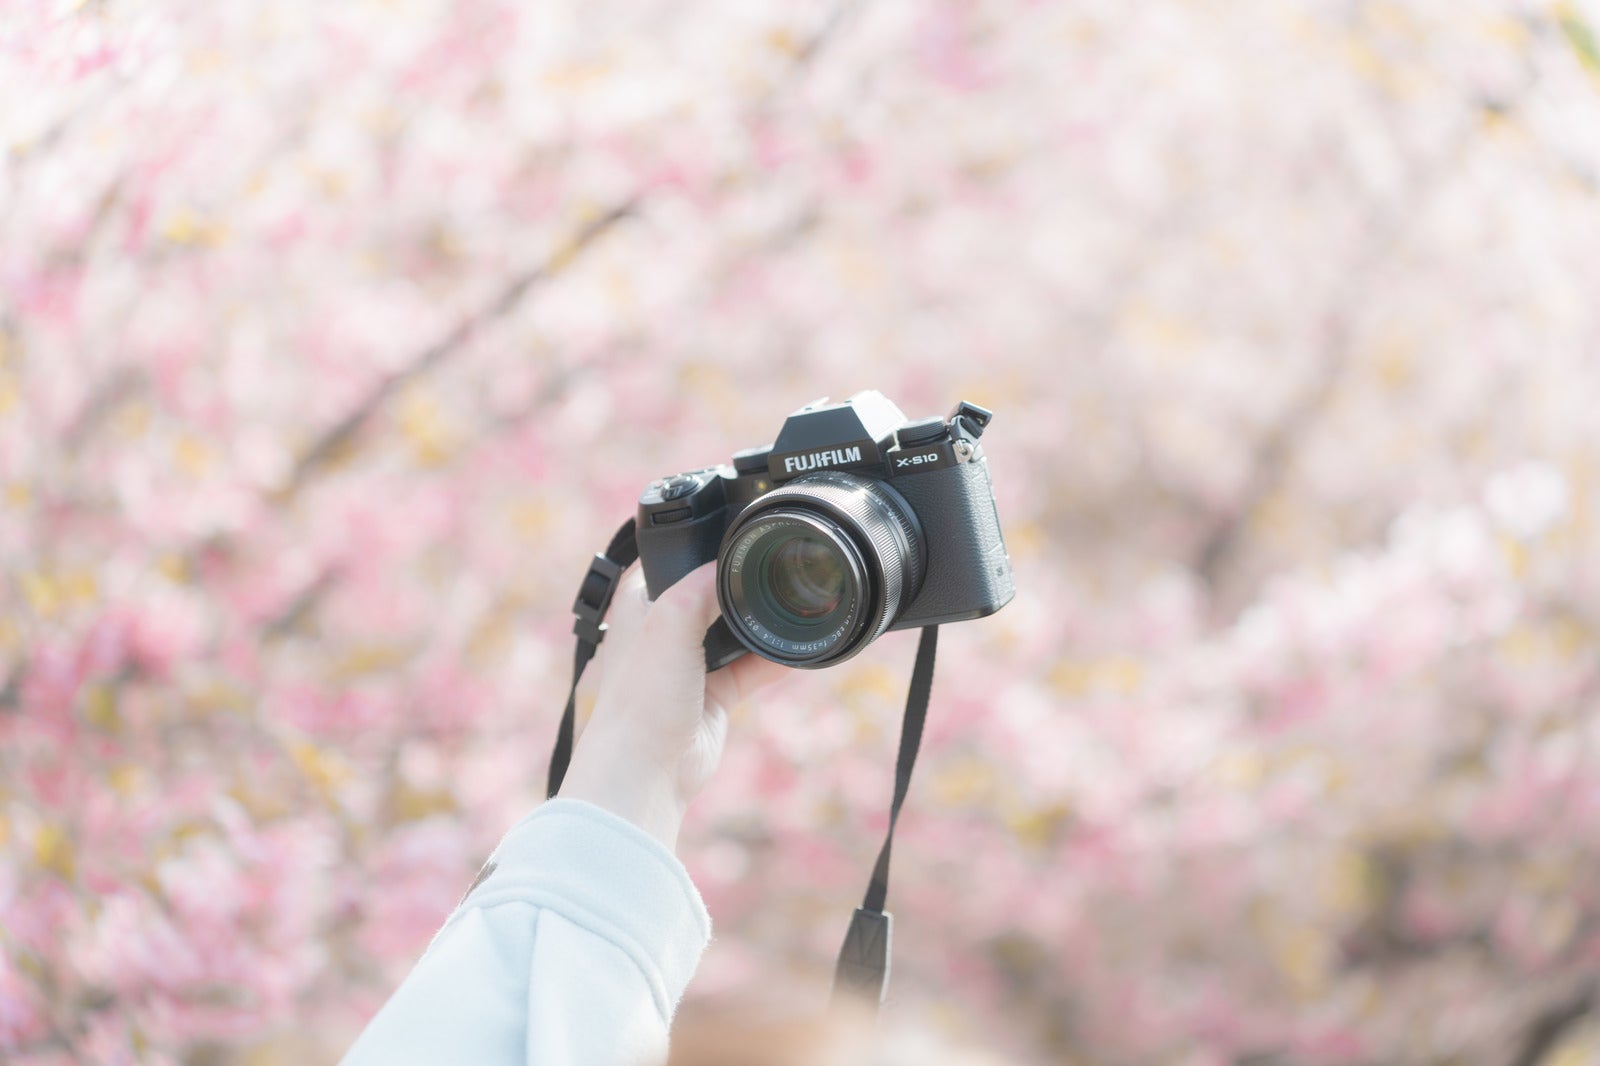 「満開の桜並木と一眼カメラで自撮り」の写真